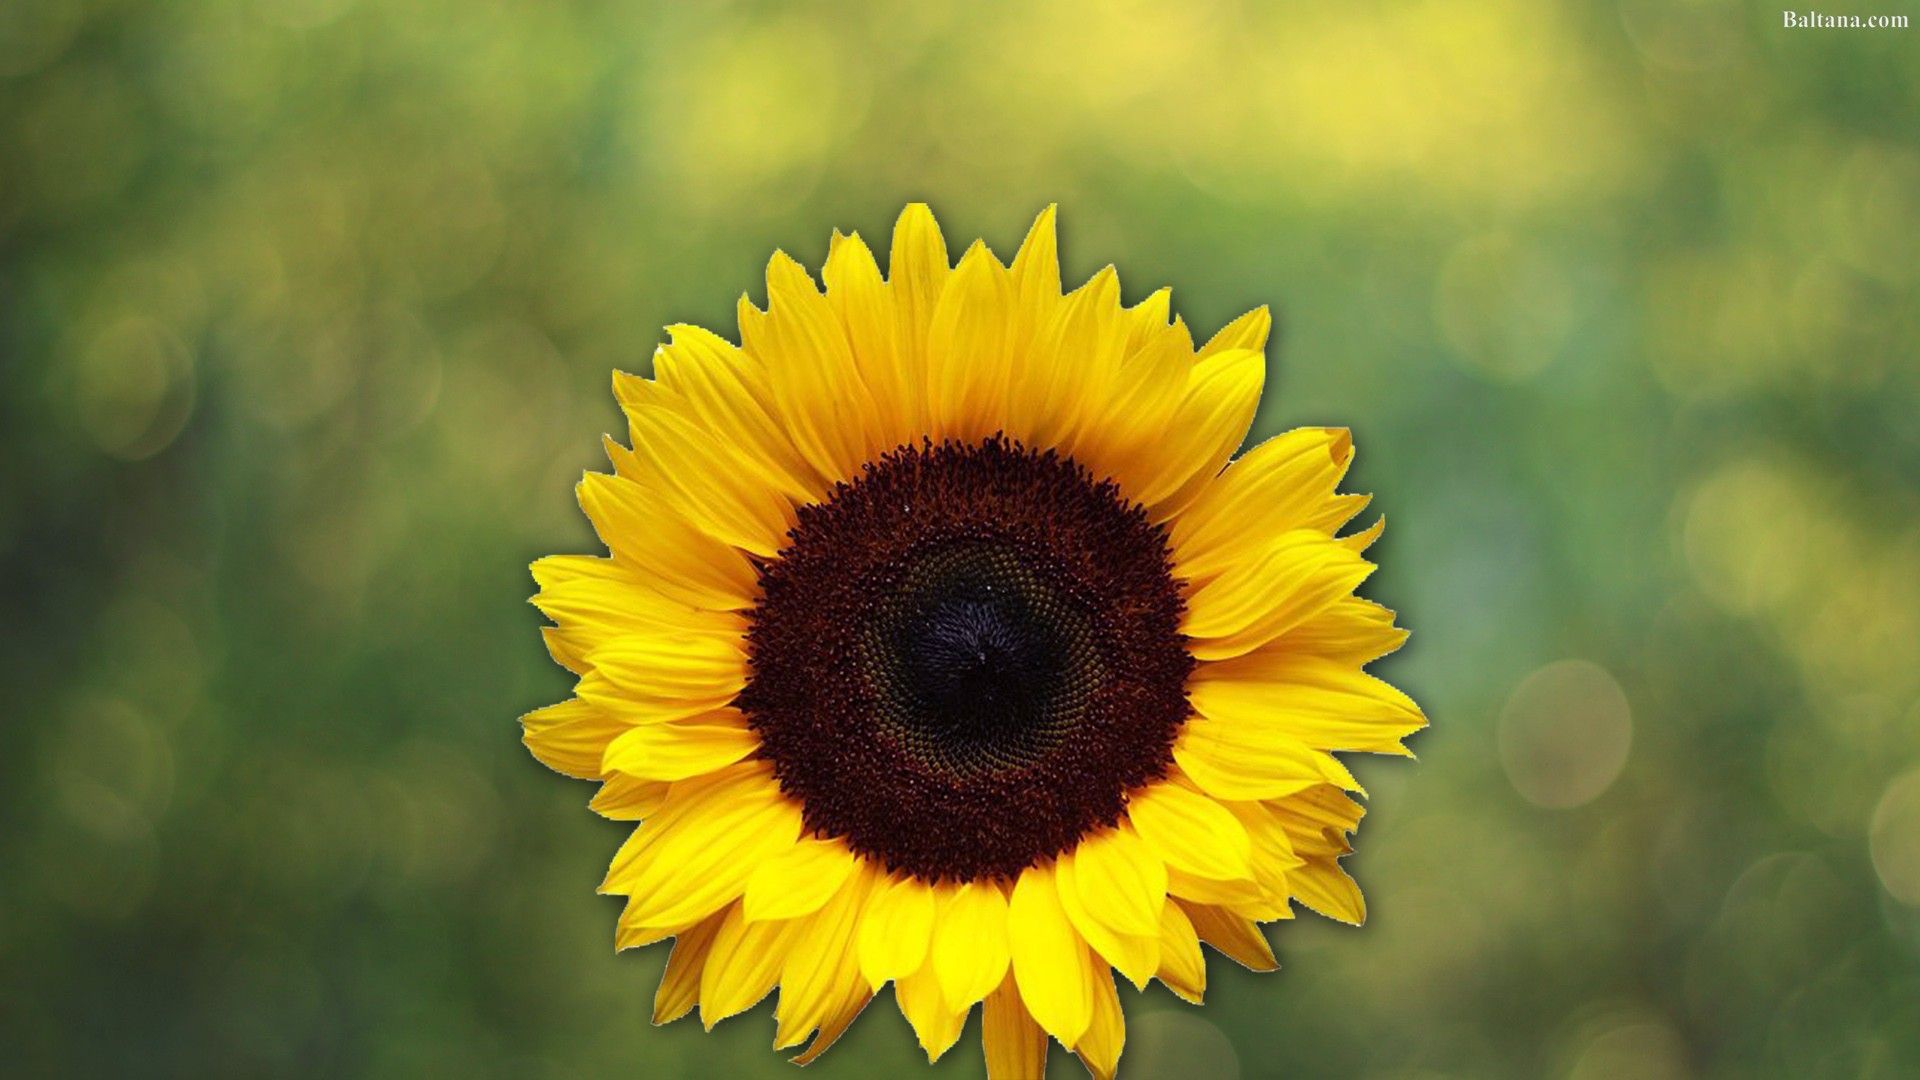 Sunflower HD Wallpaper On